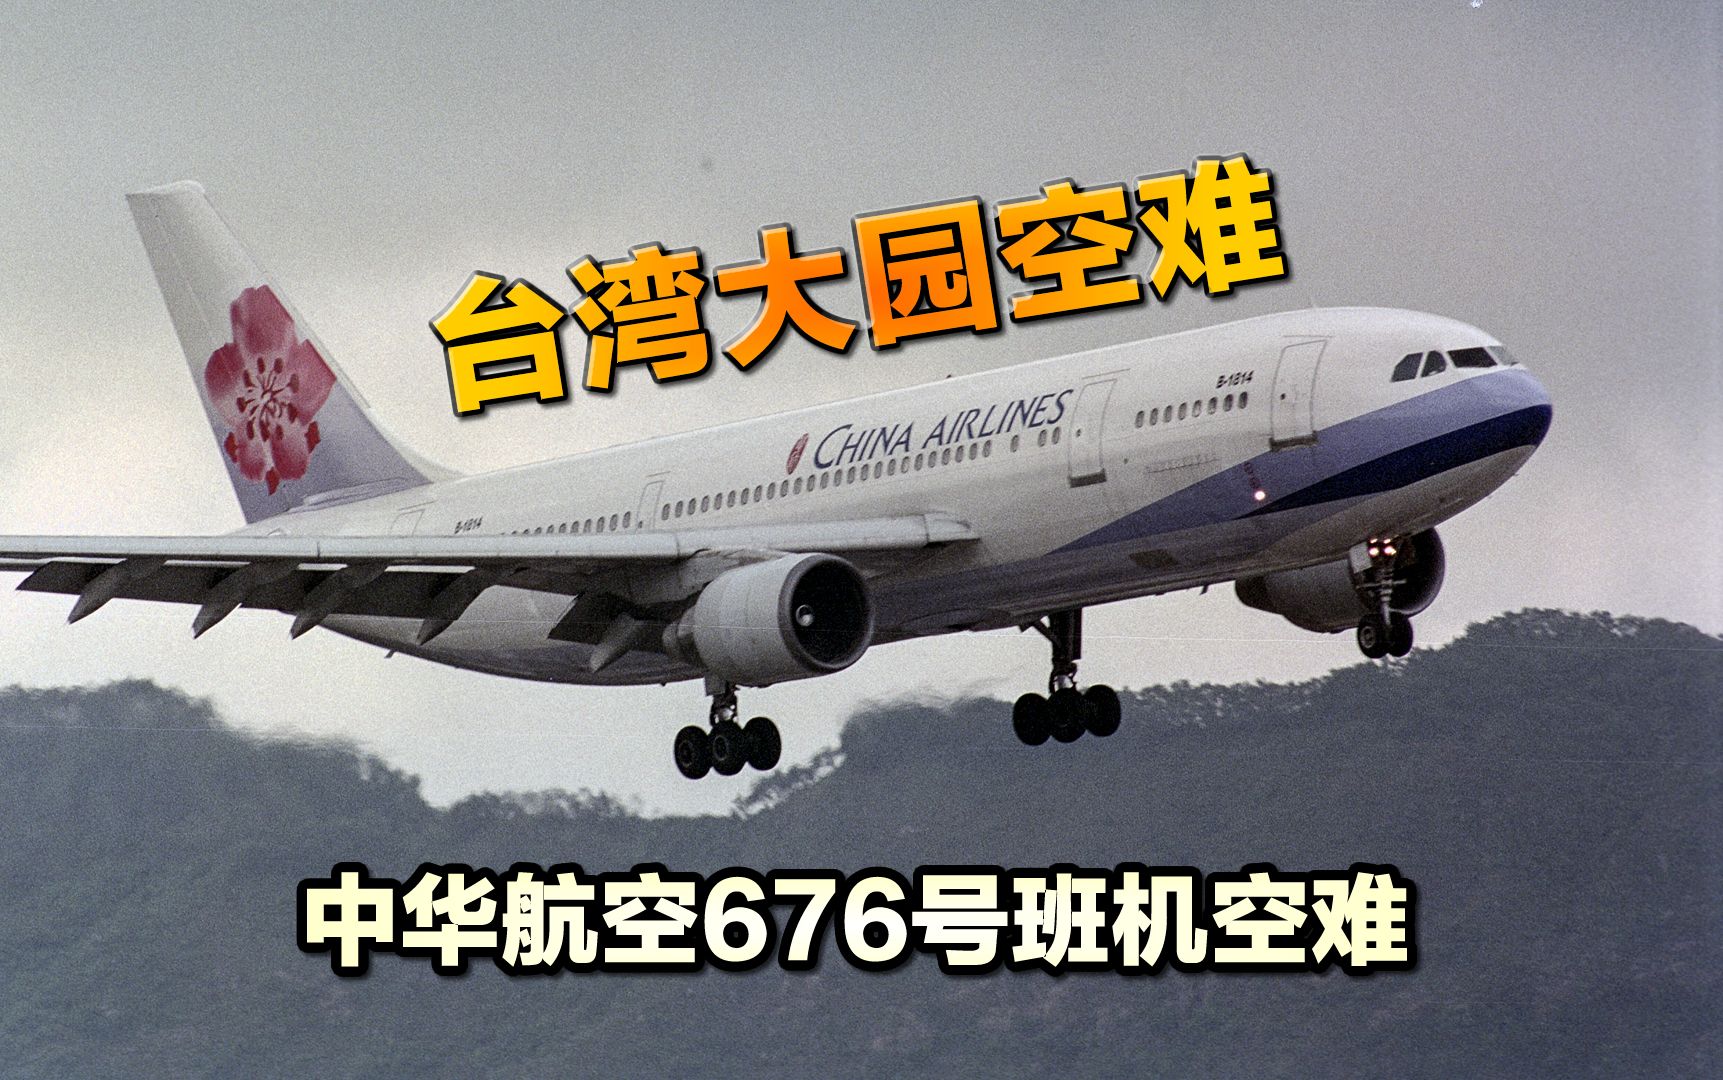 一场画面未处理就被直播的空难，1998年台湾中华航空676号班机事故，即大园空难，纪录片《空中浩劫》第24季第5集解说